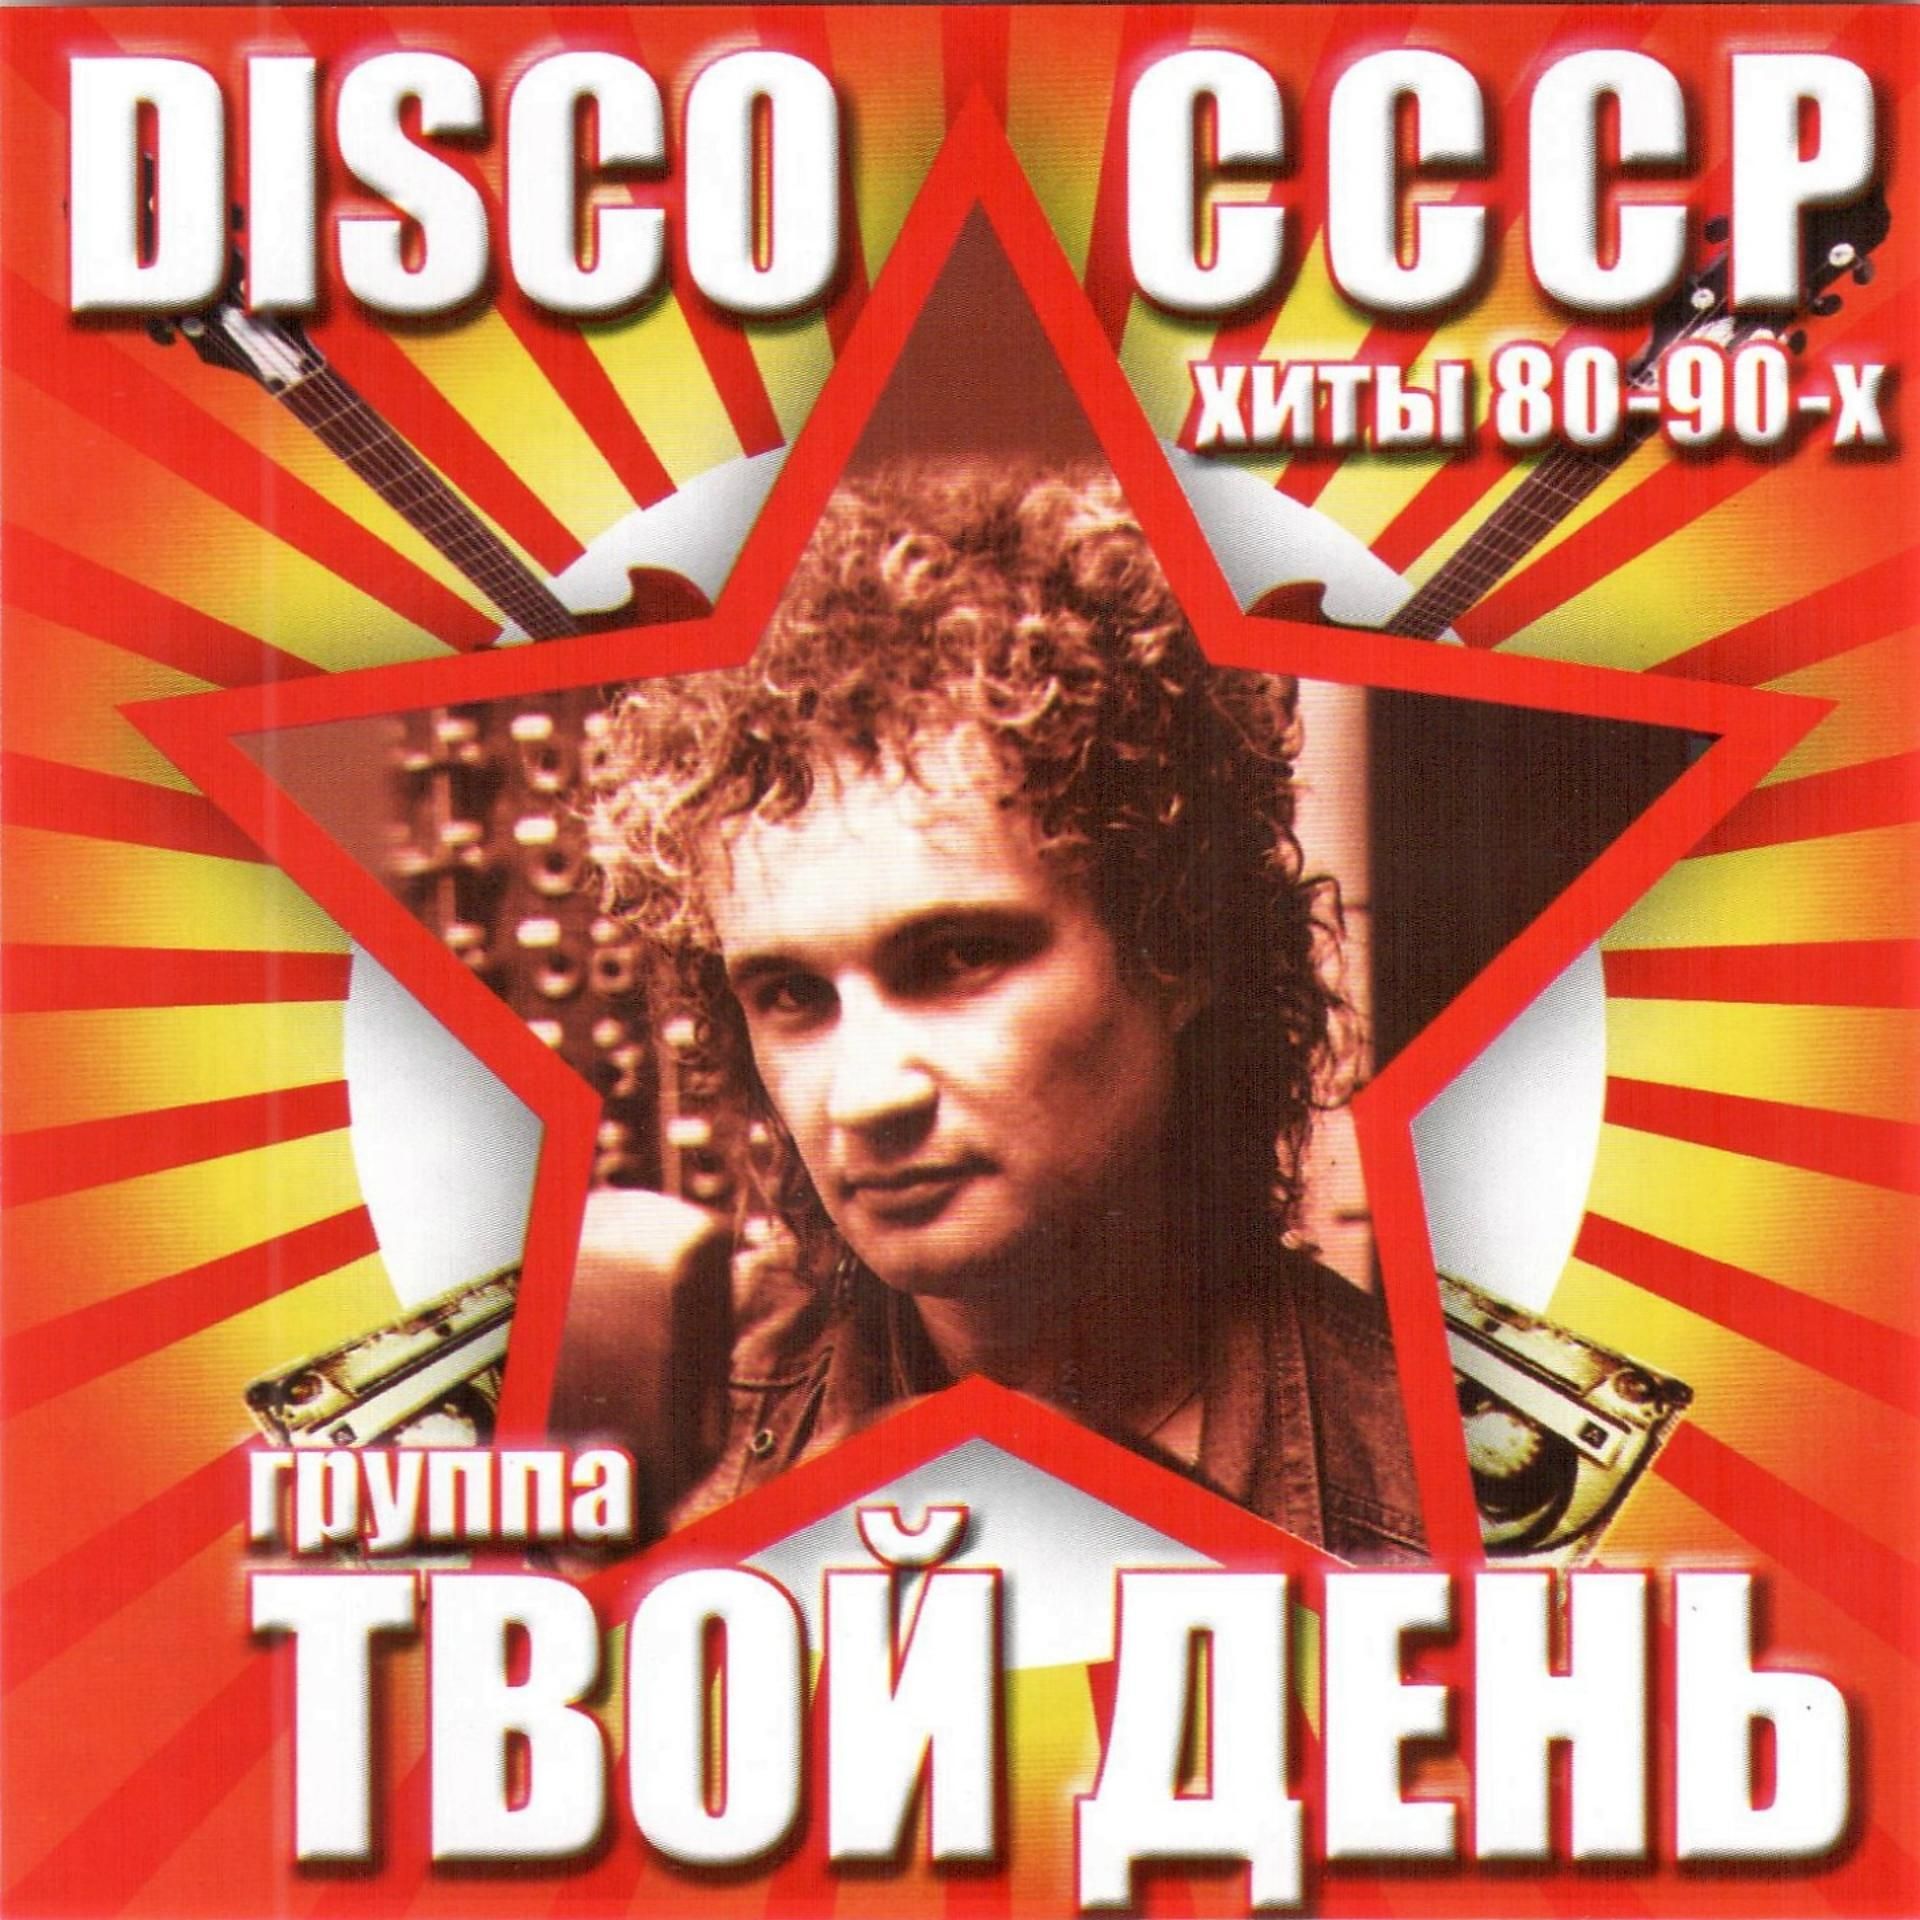 Слушать песни советских хитов. Группа твой день. Disco СССР группа твой день.